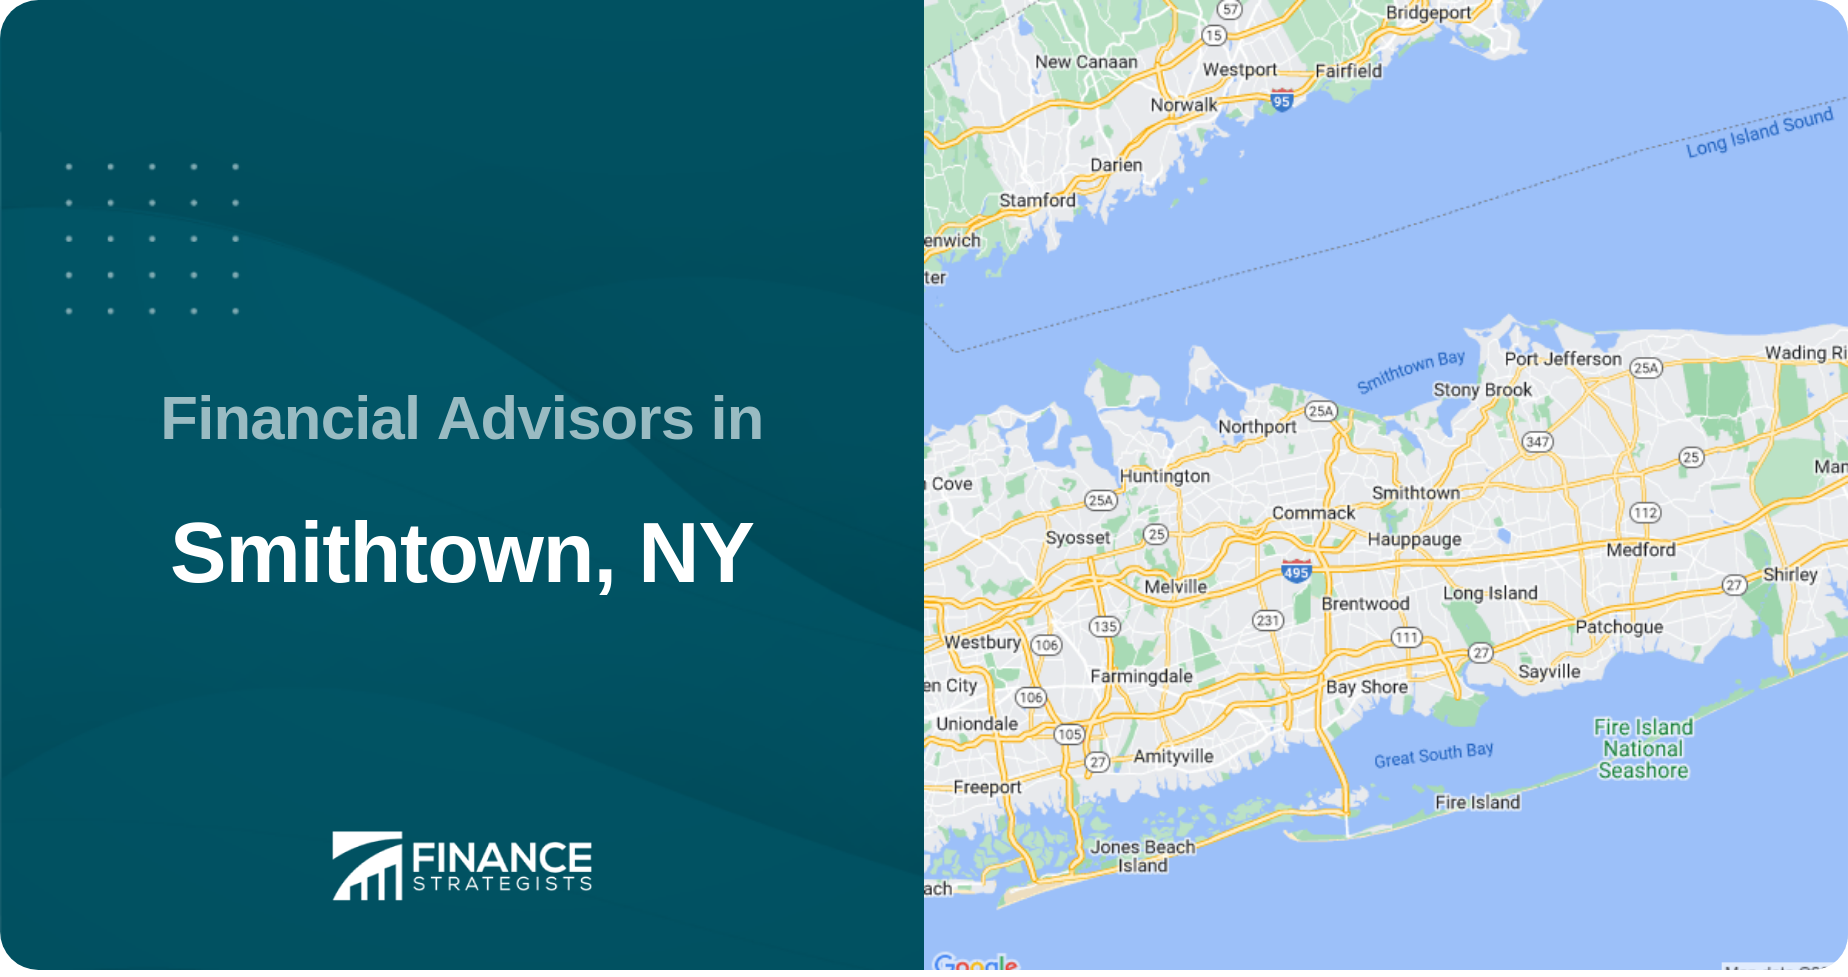 Financial Advisors in Smithtown, NY